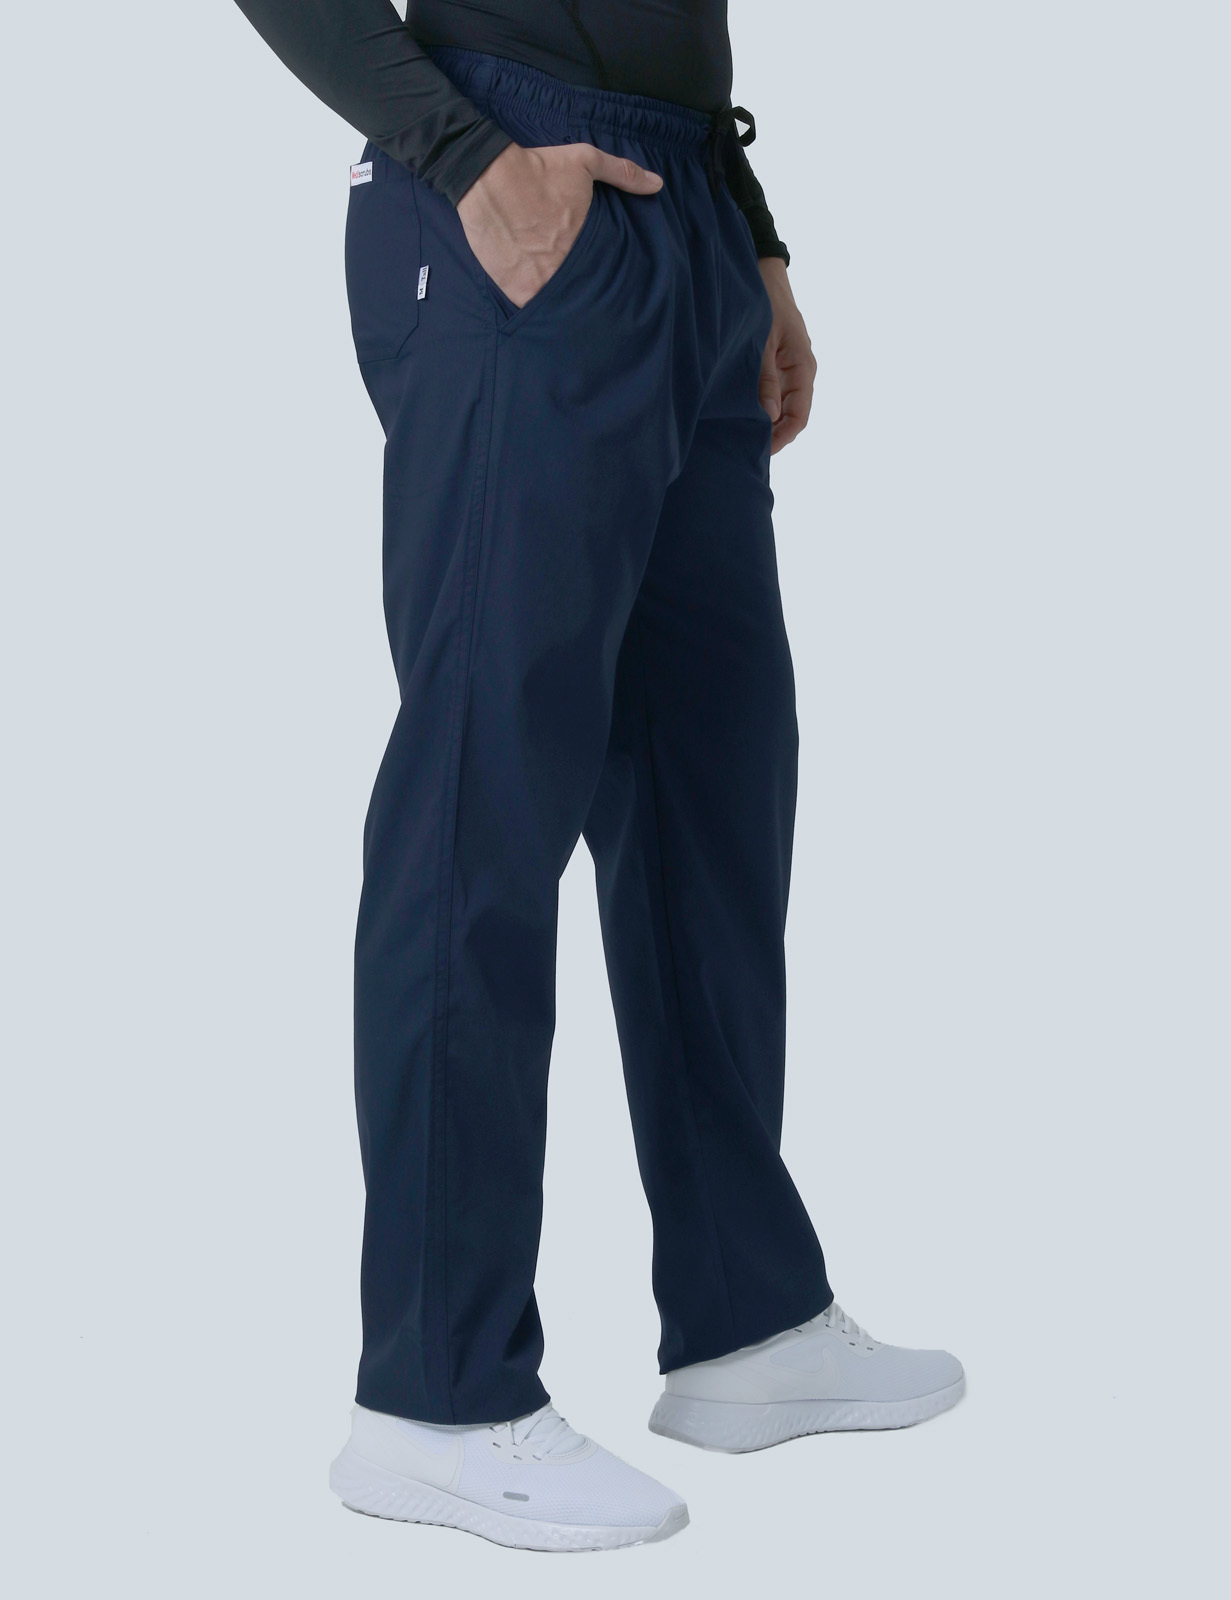 Men's Regular Cut Pants - Navy - Large - Tall - 0